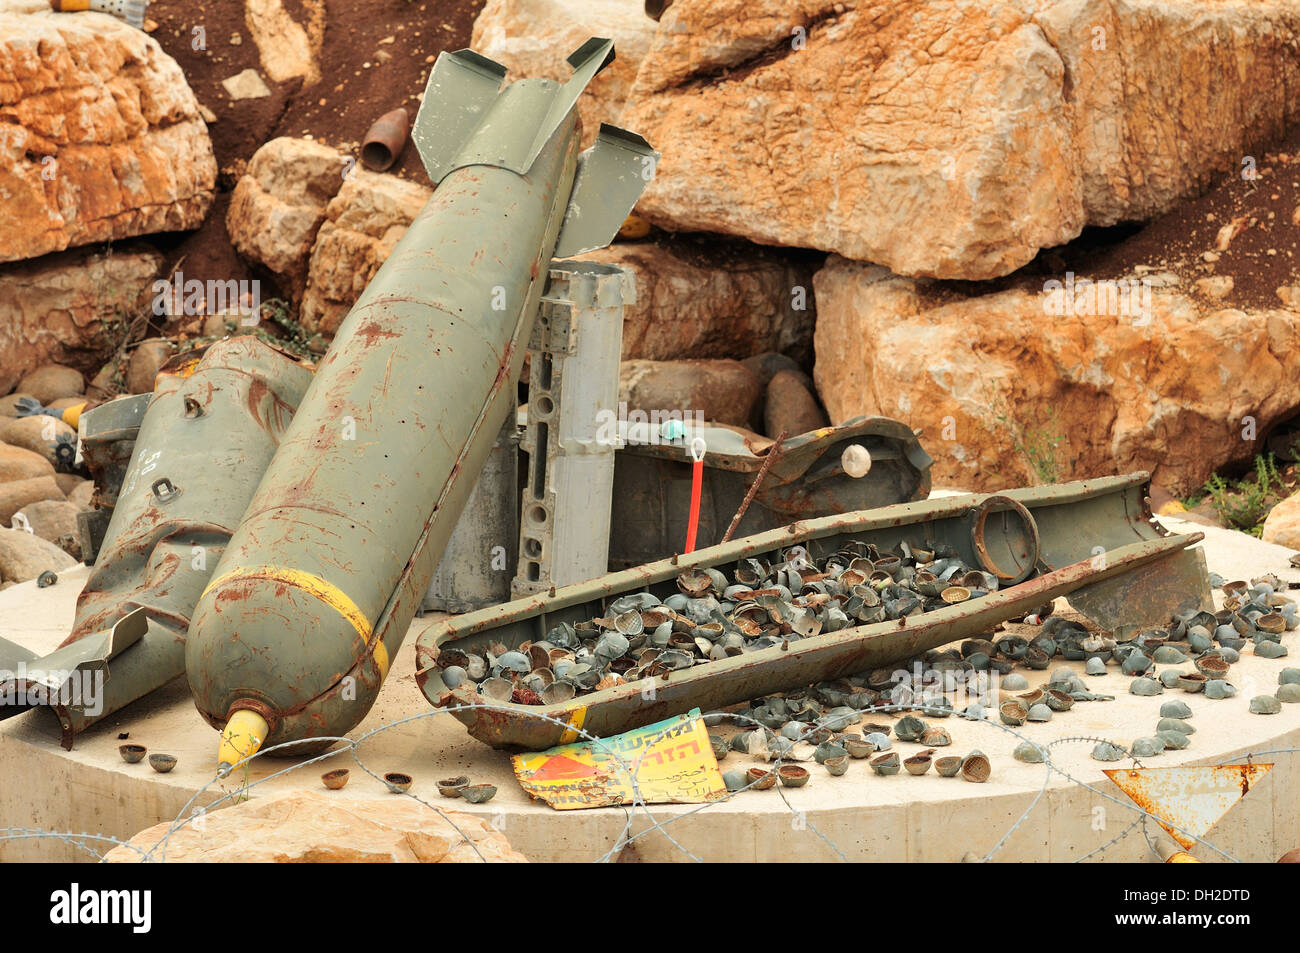 Le bombe a grappolo o di munizioni a grappolo, sono le armi contenenti più esplosivo submunizioni. Mleeta, Libano Foto Stock